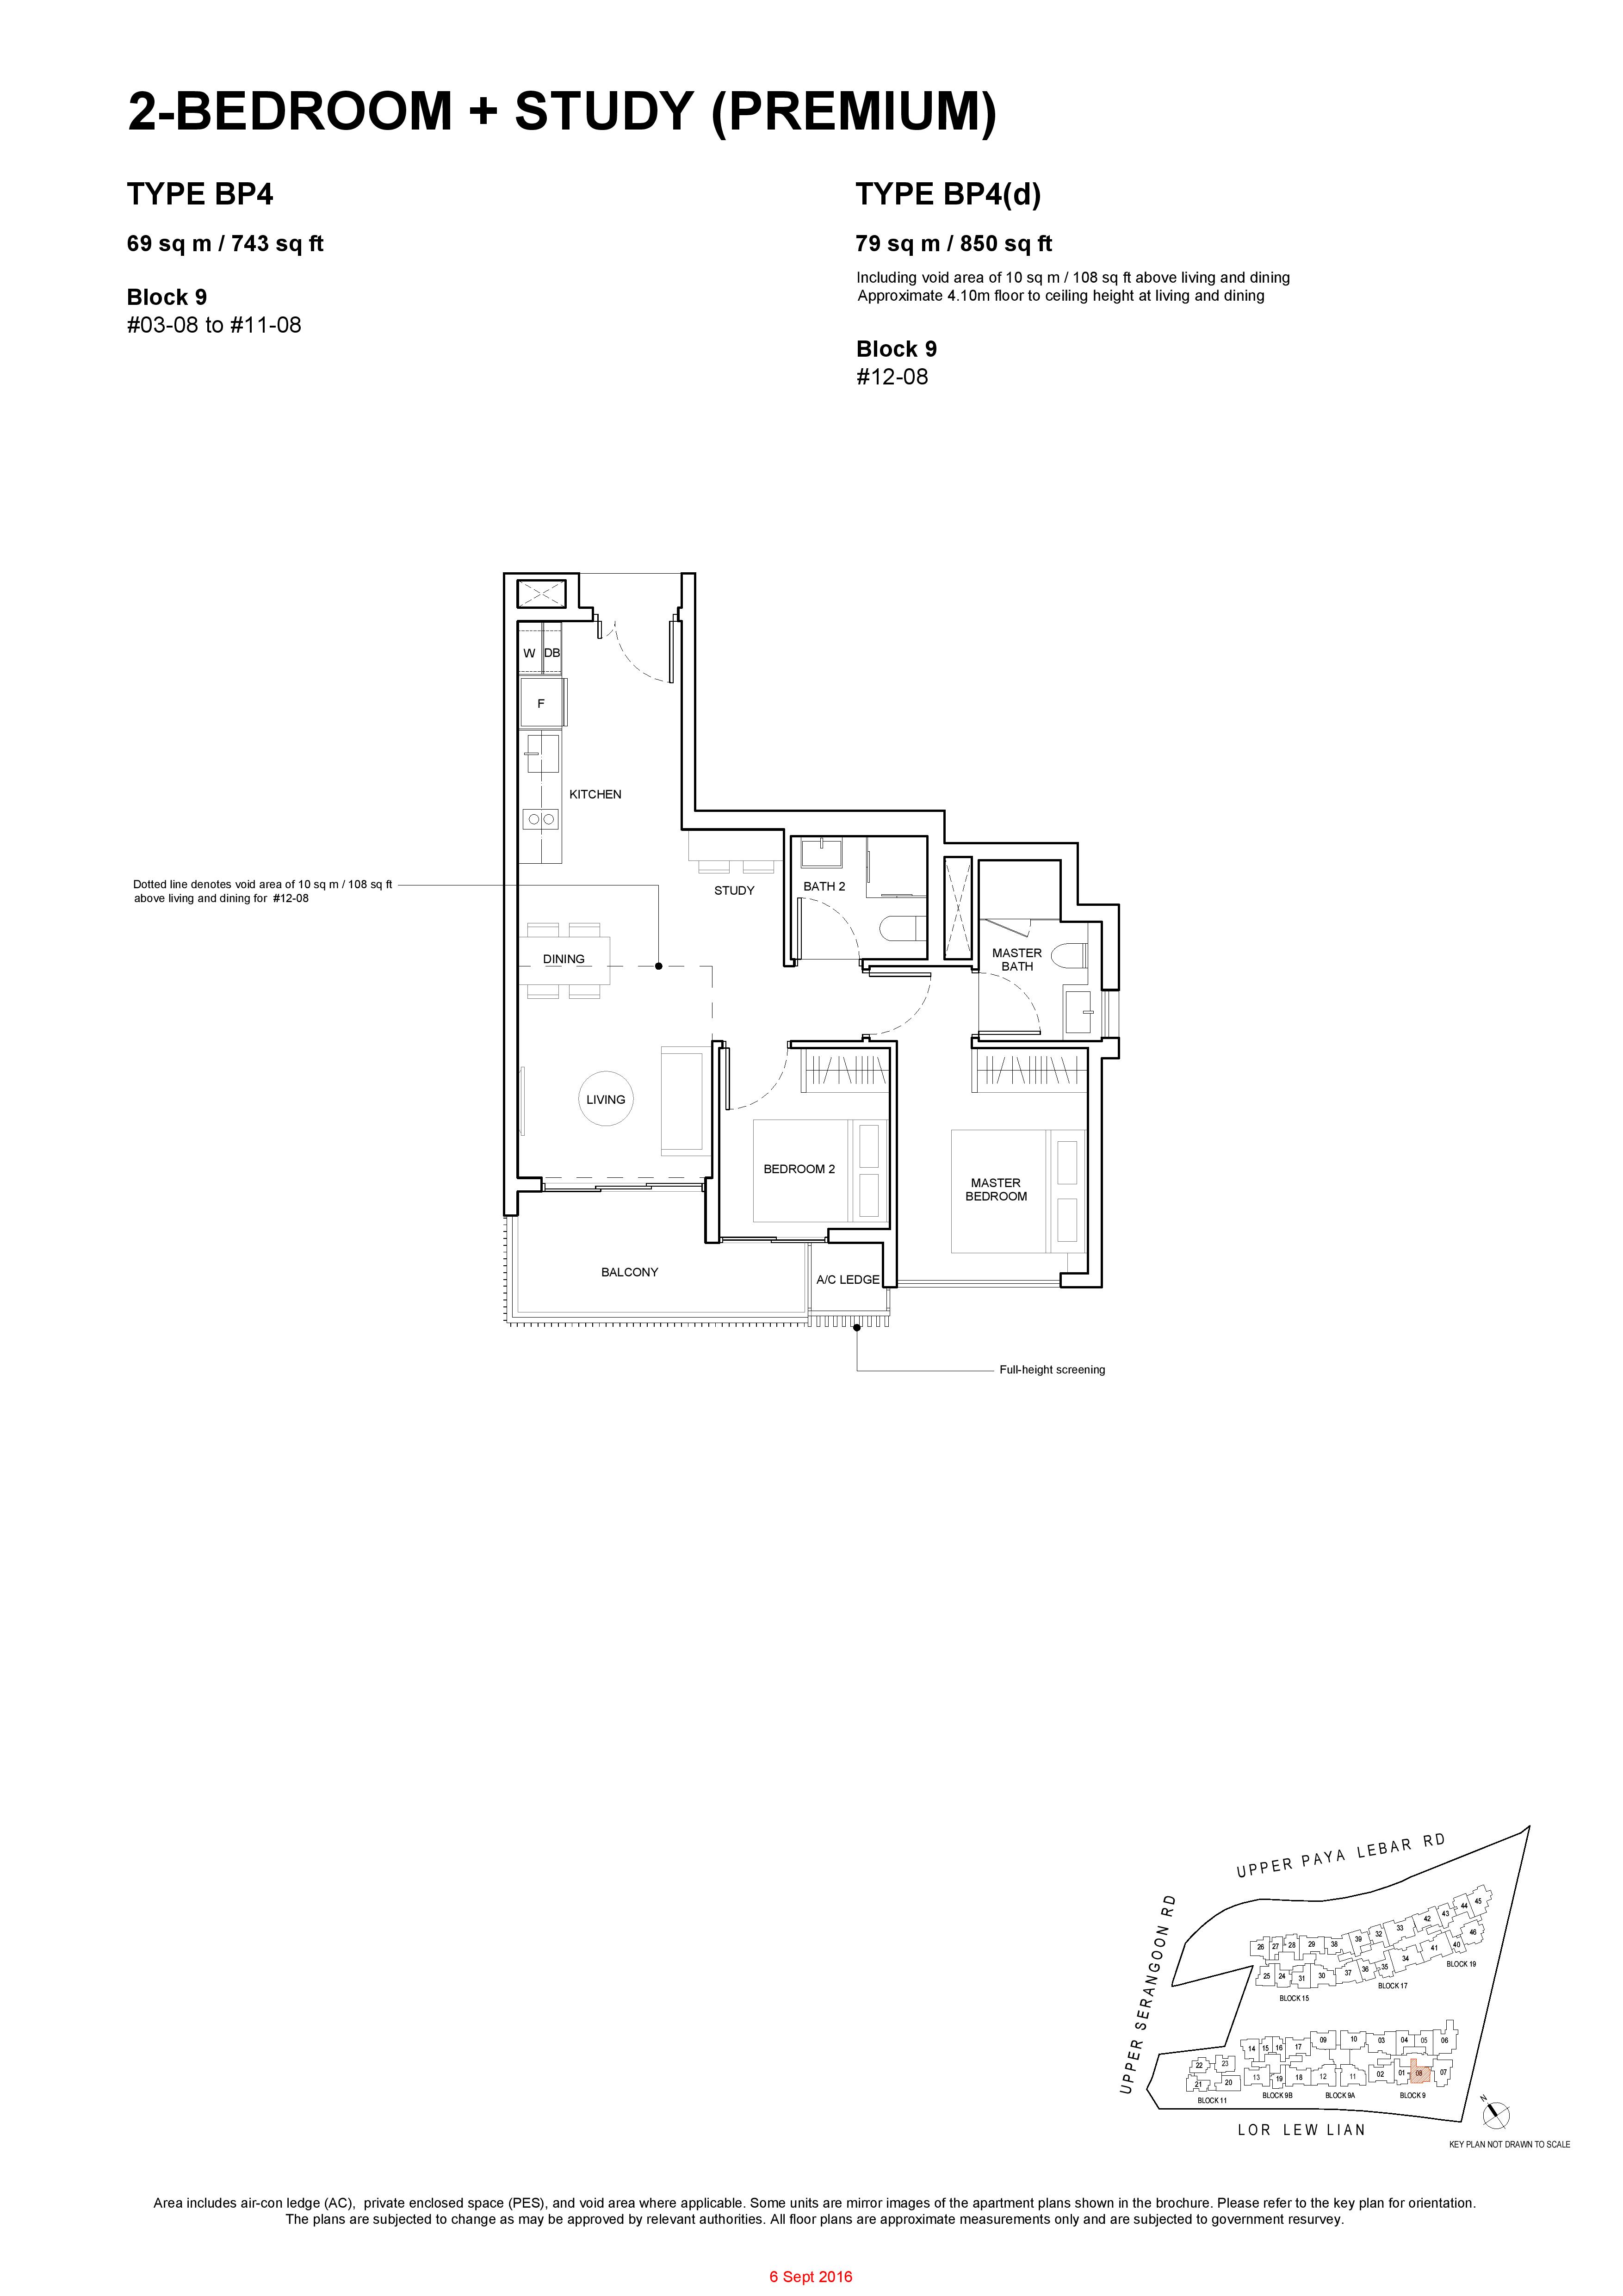 Forest Woods 2 Bedroom + Study (Premium) Type BP4, BP4(d) Floor Plan